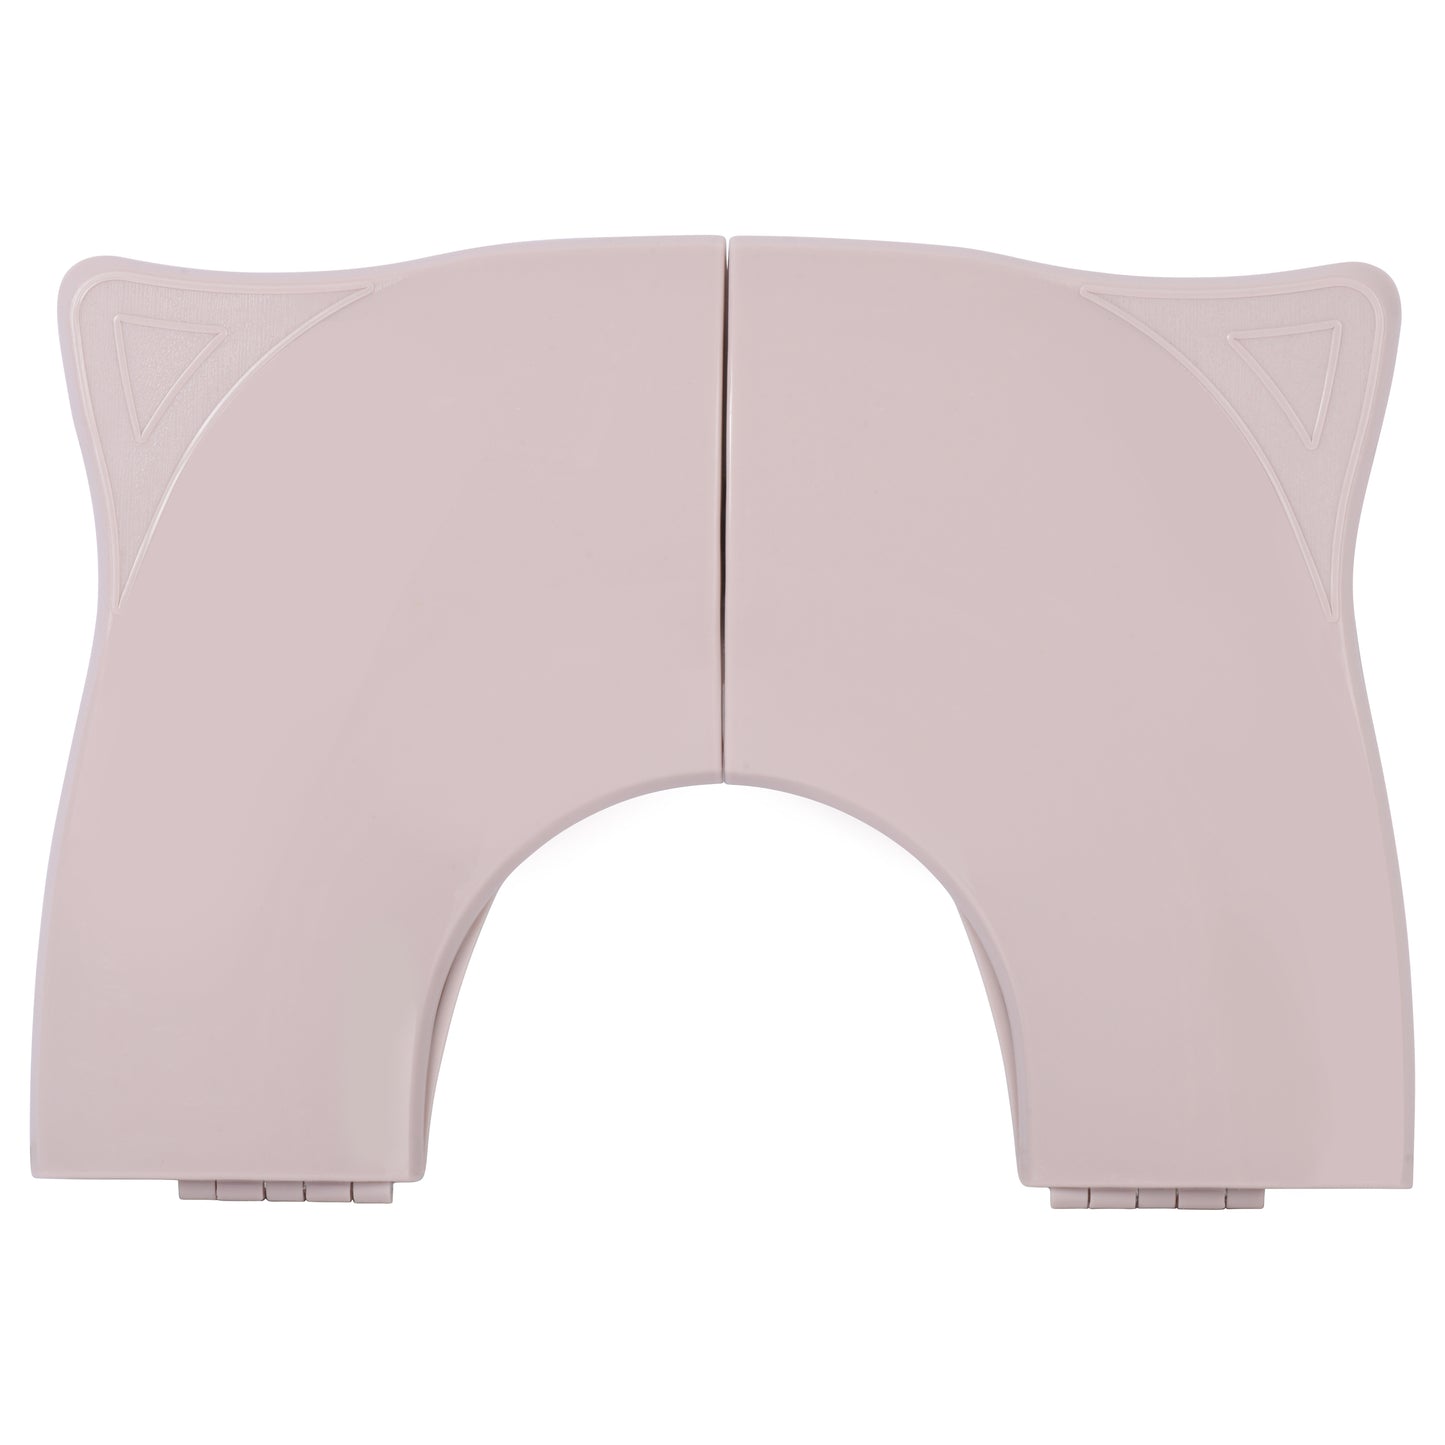 Folding Toddler Travel Potty Seat - Blush Pink